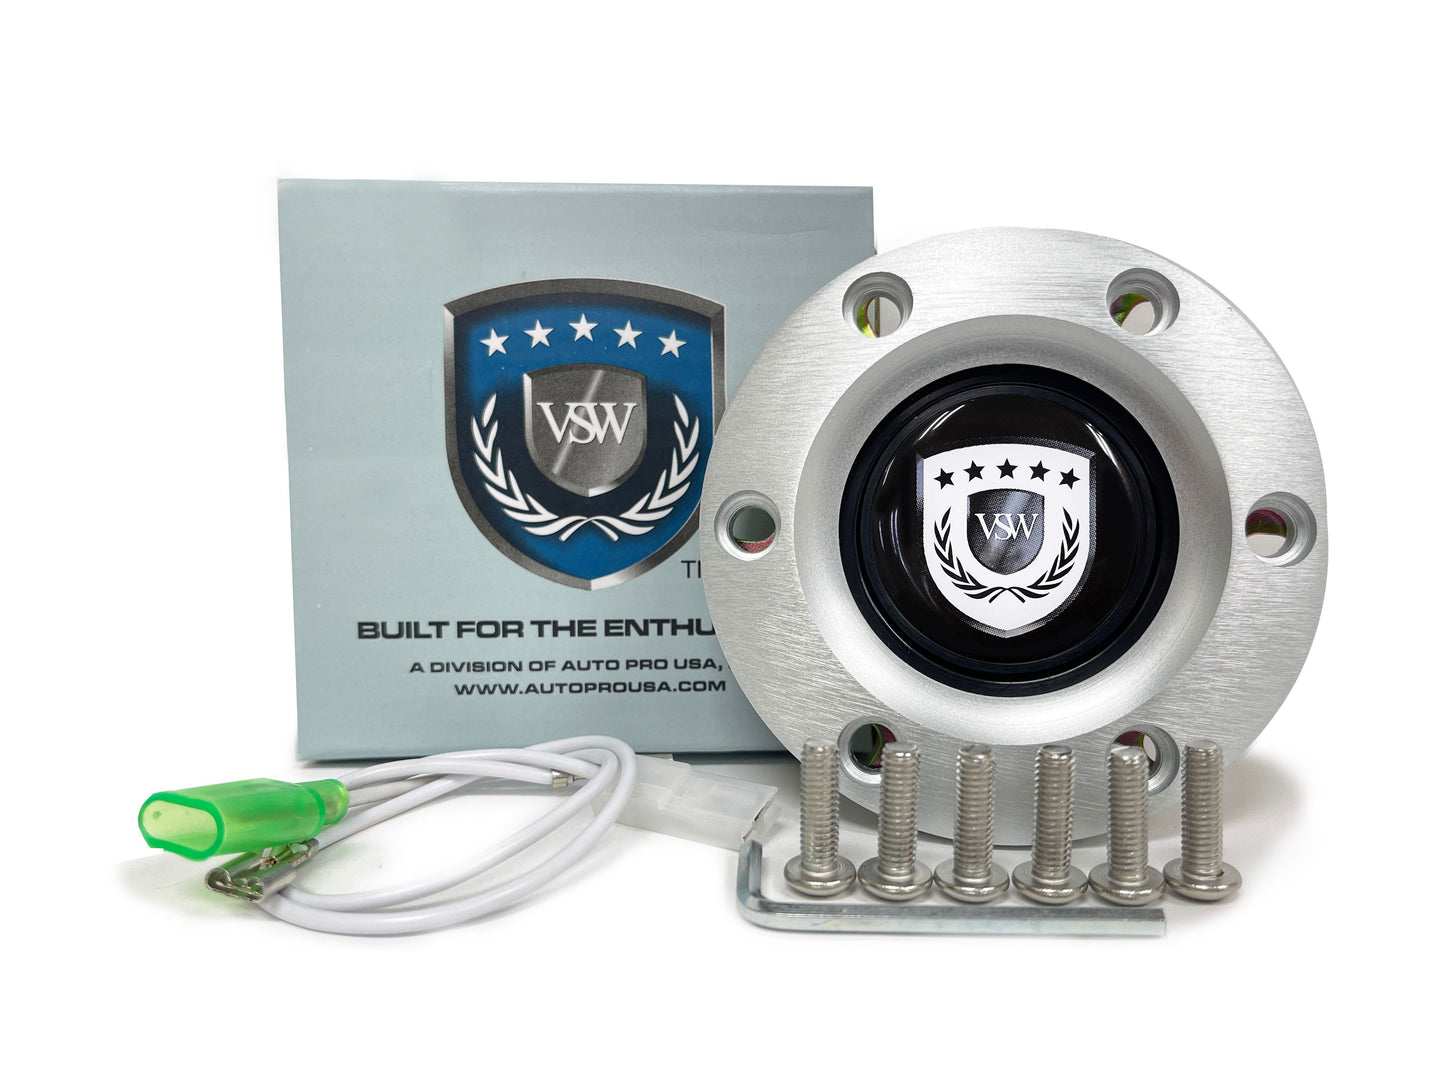 VSW S6 | White VSW Emblem | Brushed Horn Button | STEVSWWHT-BRU